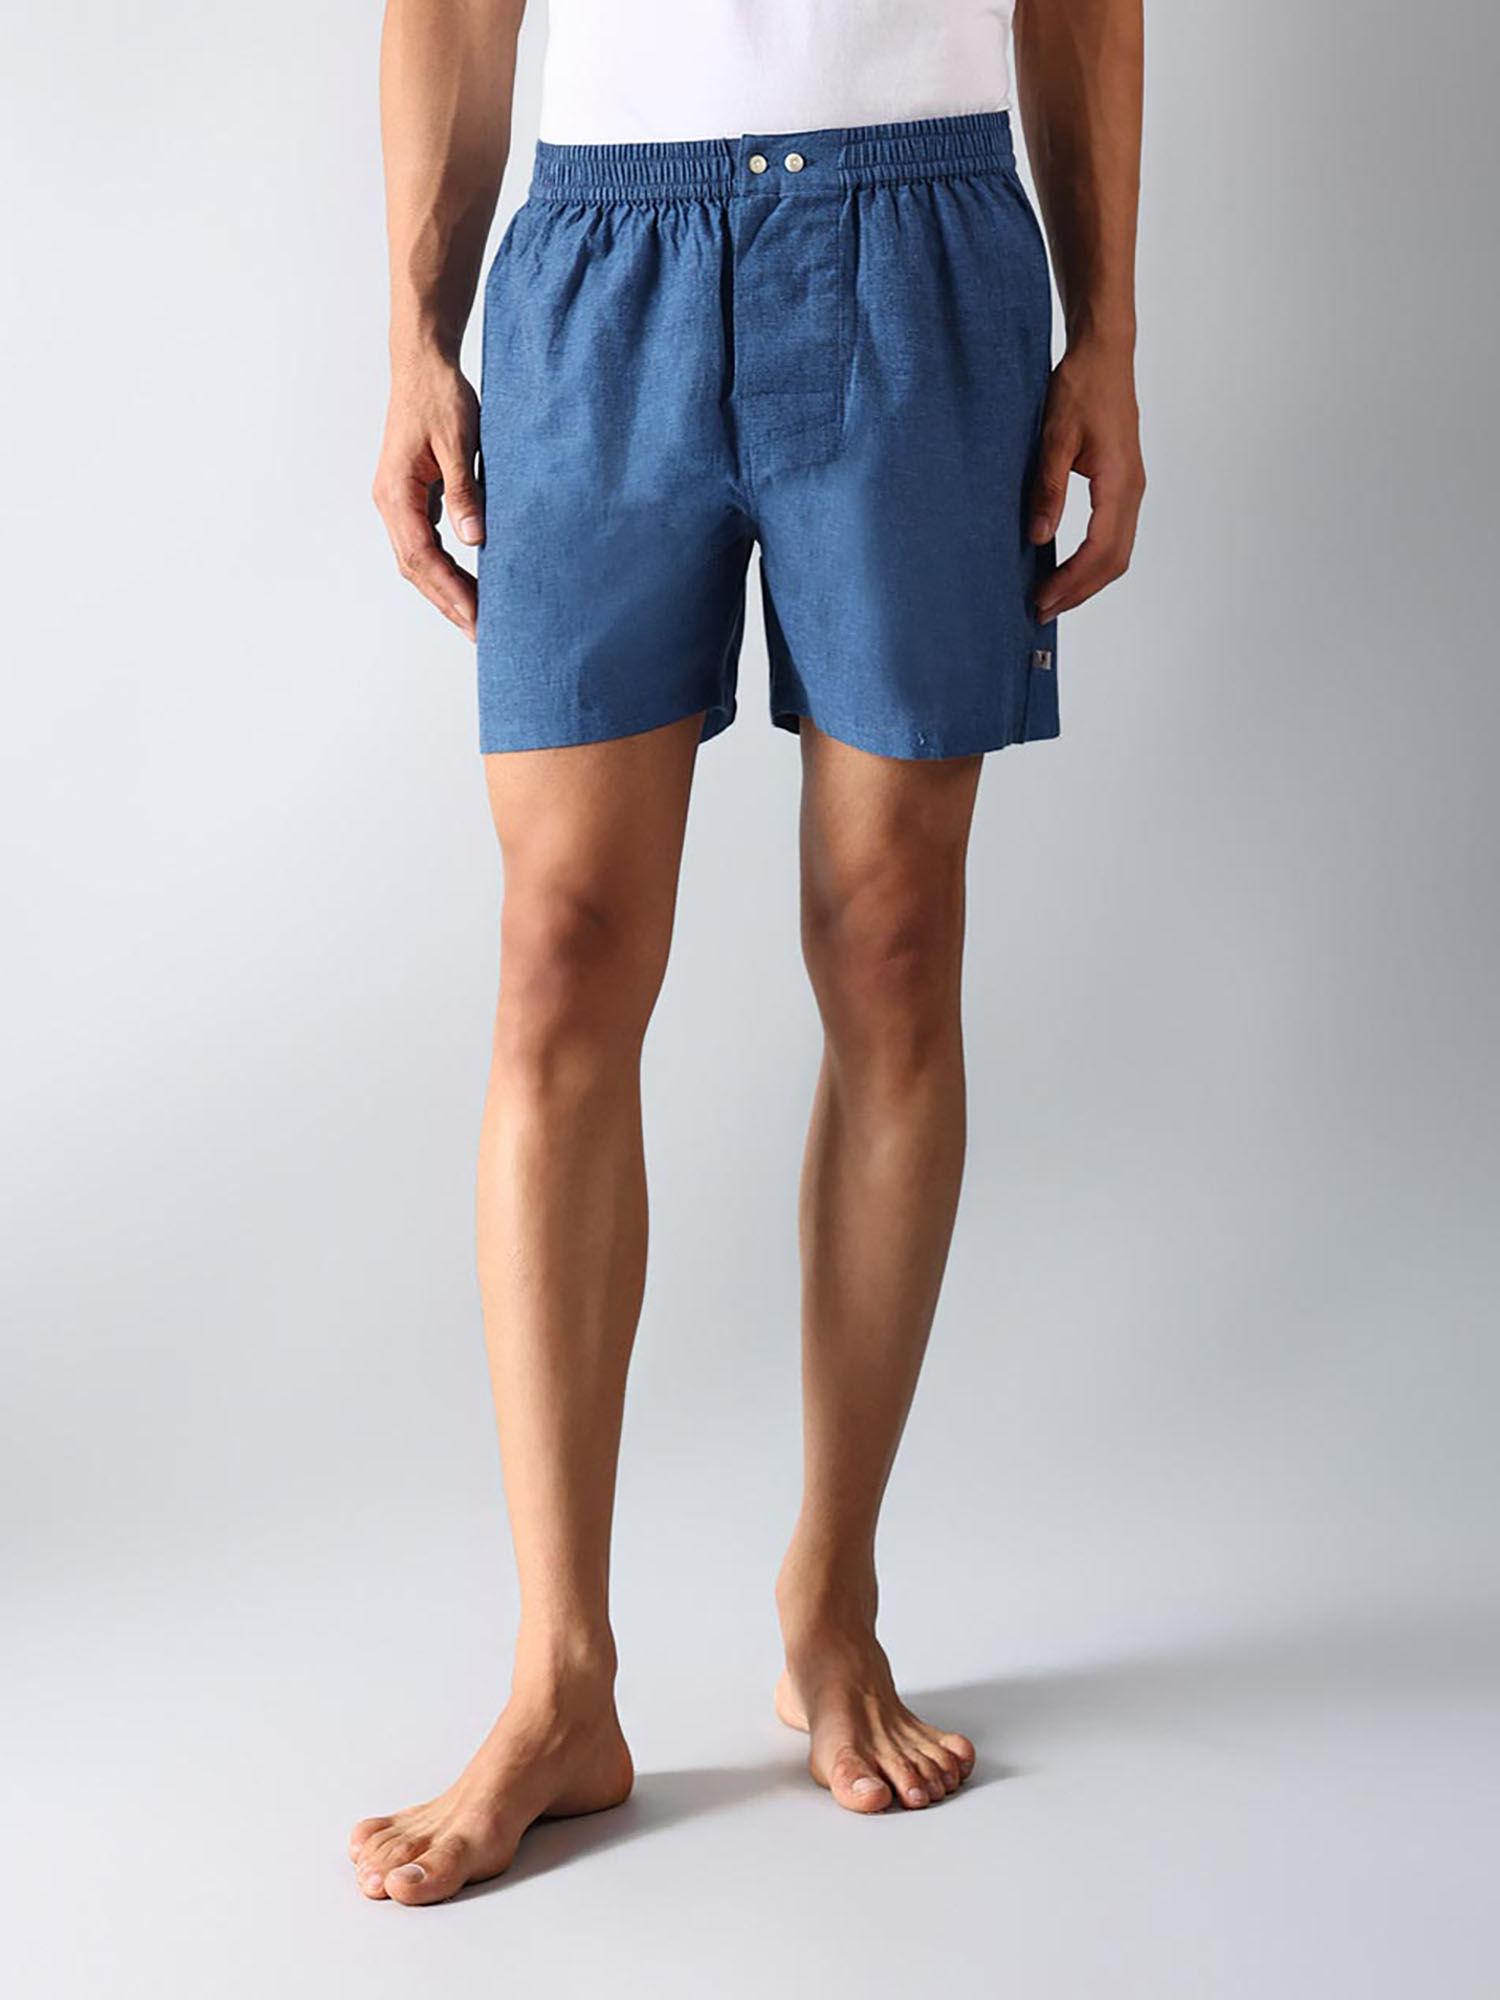 light-blue-cotton-boxer-shorts